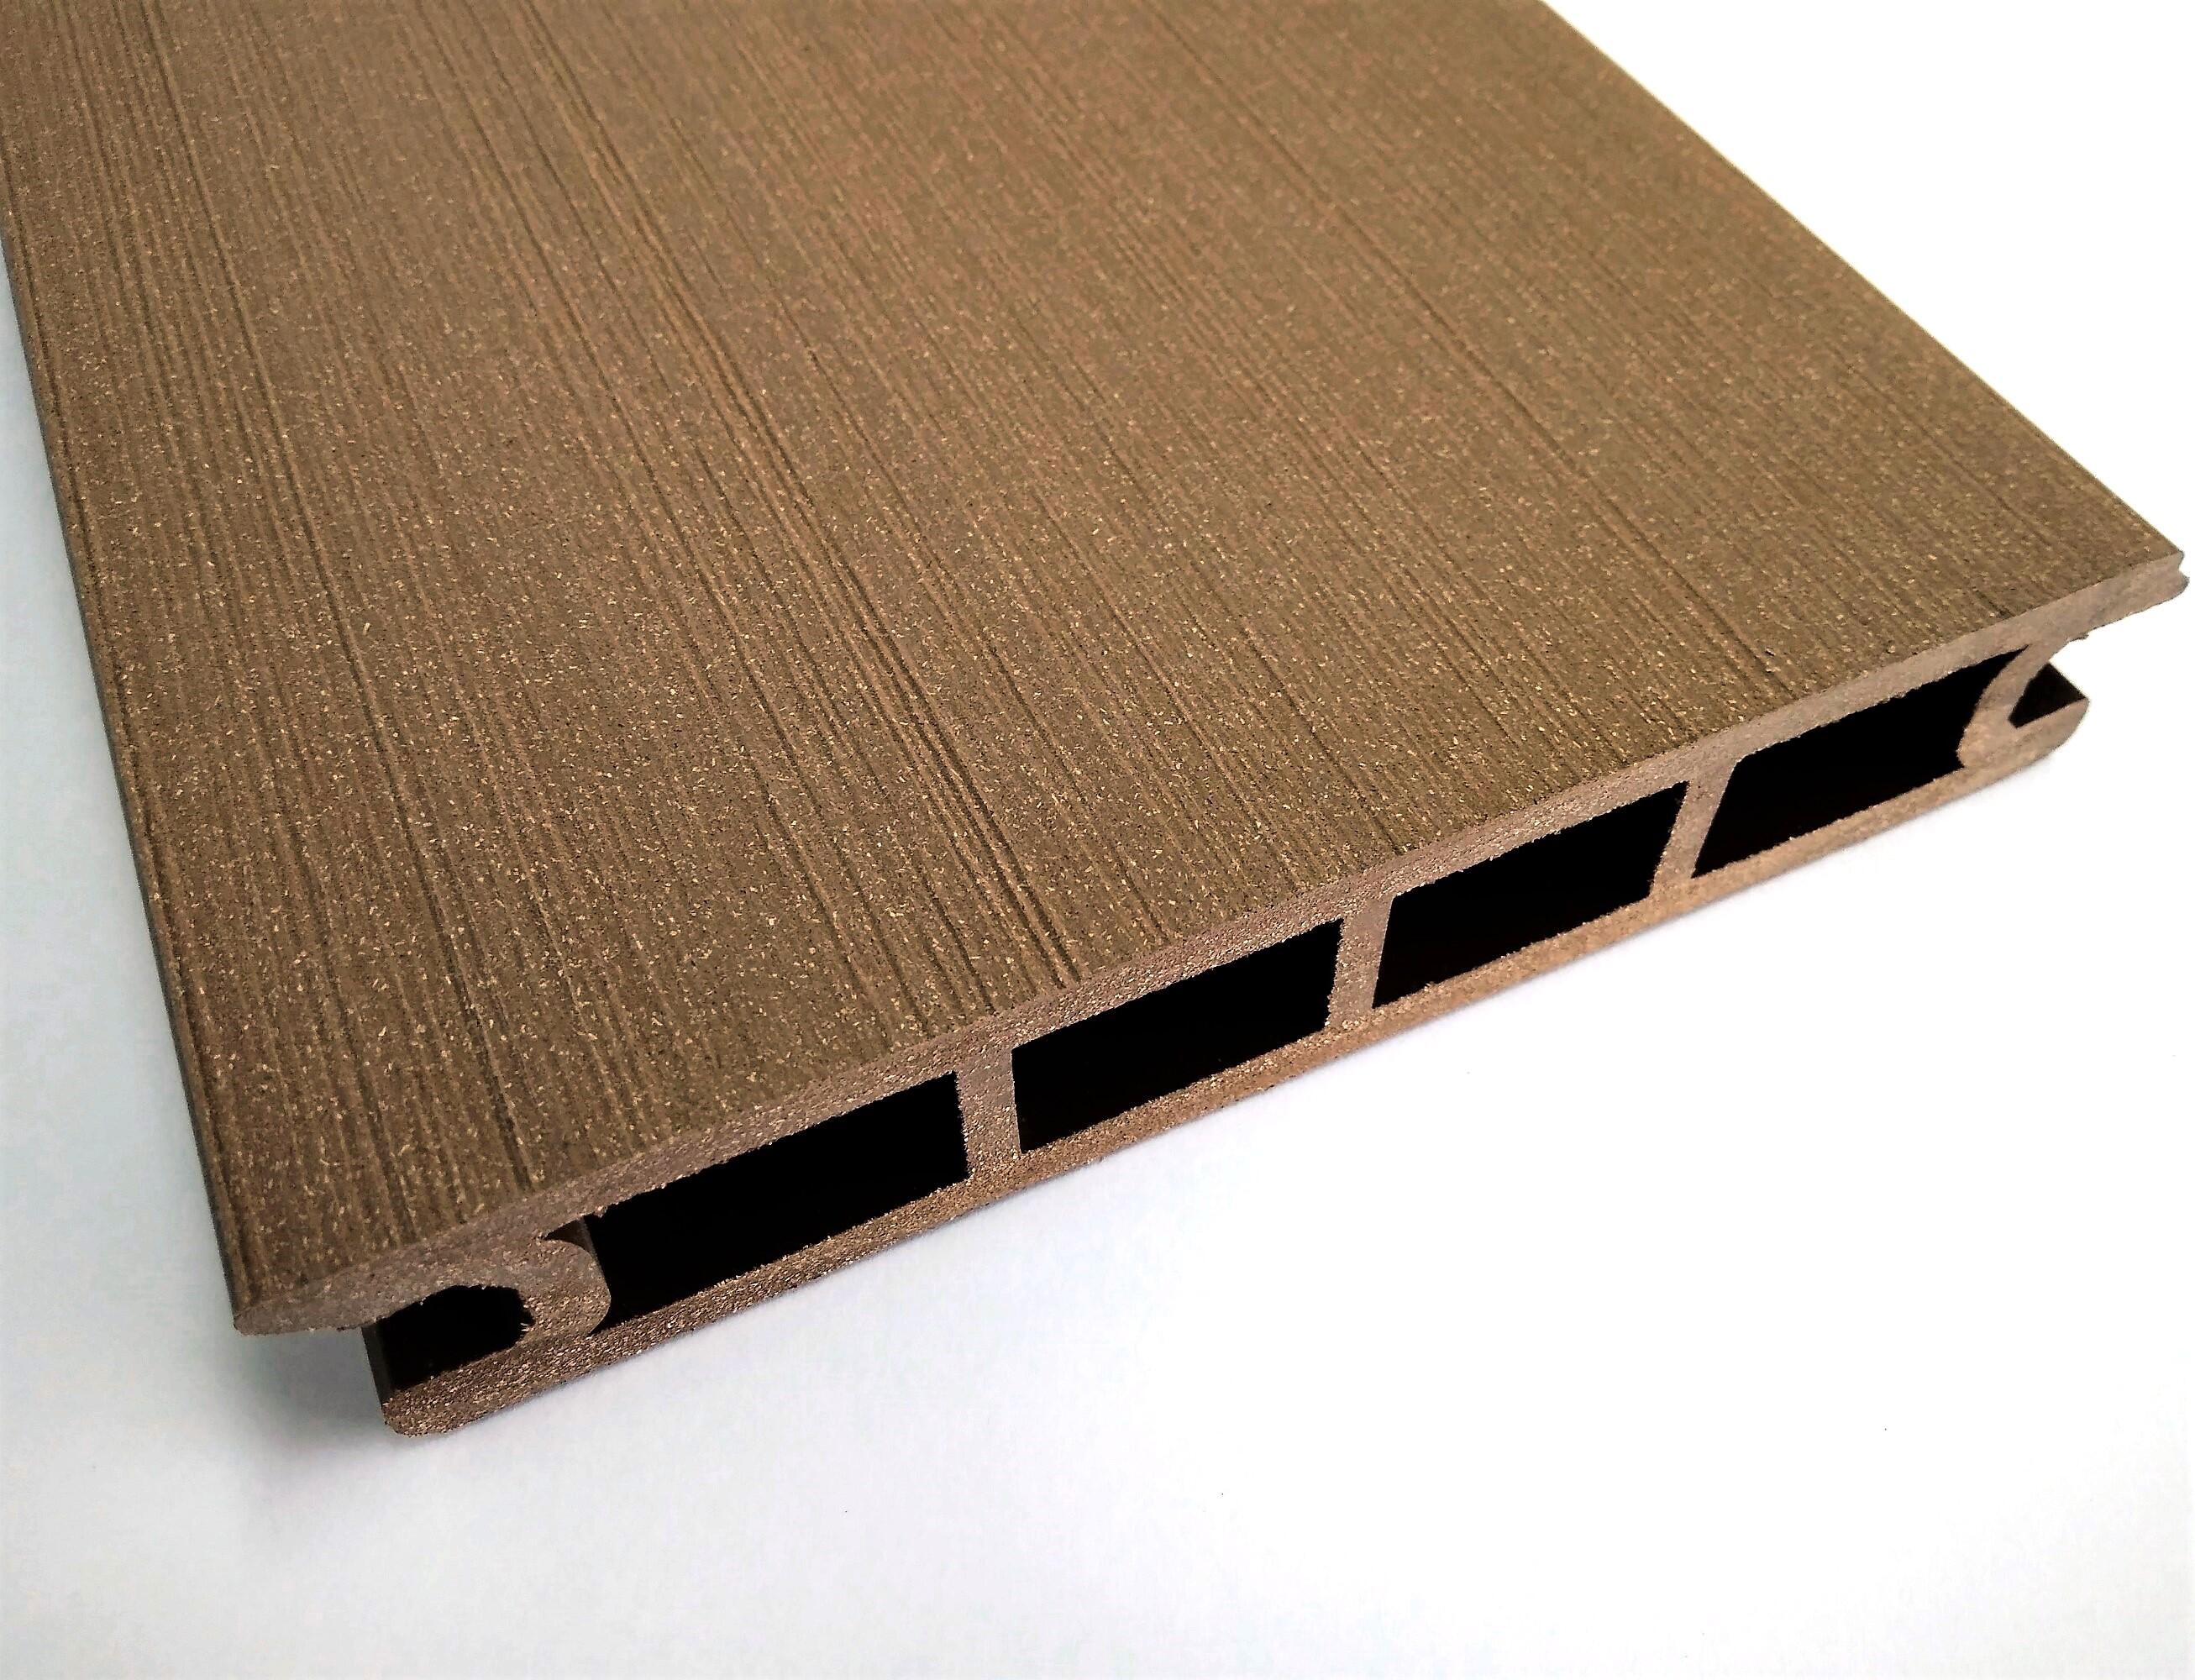 Lama de fachada cwall composite marrón red wood 14x230 cm y 22.5 mm